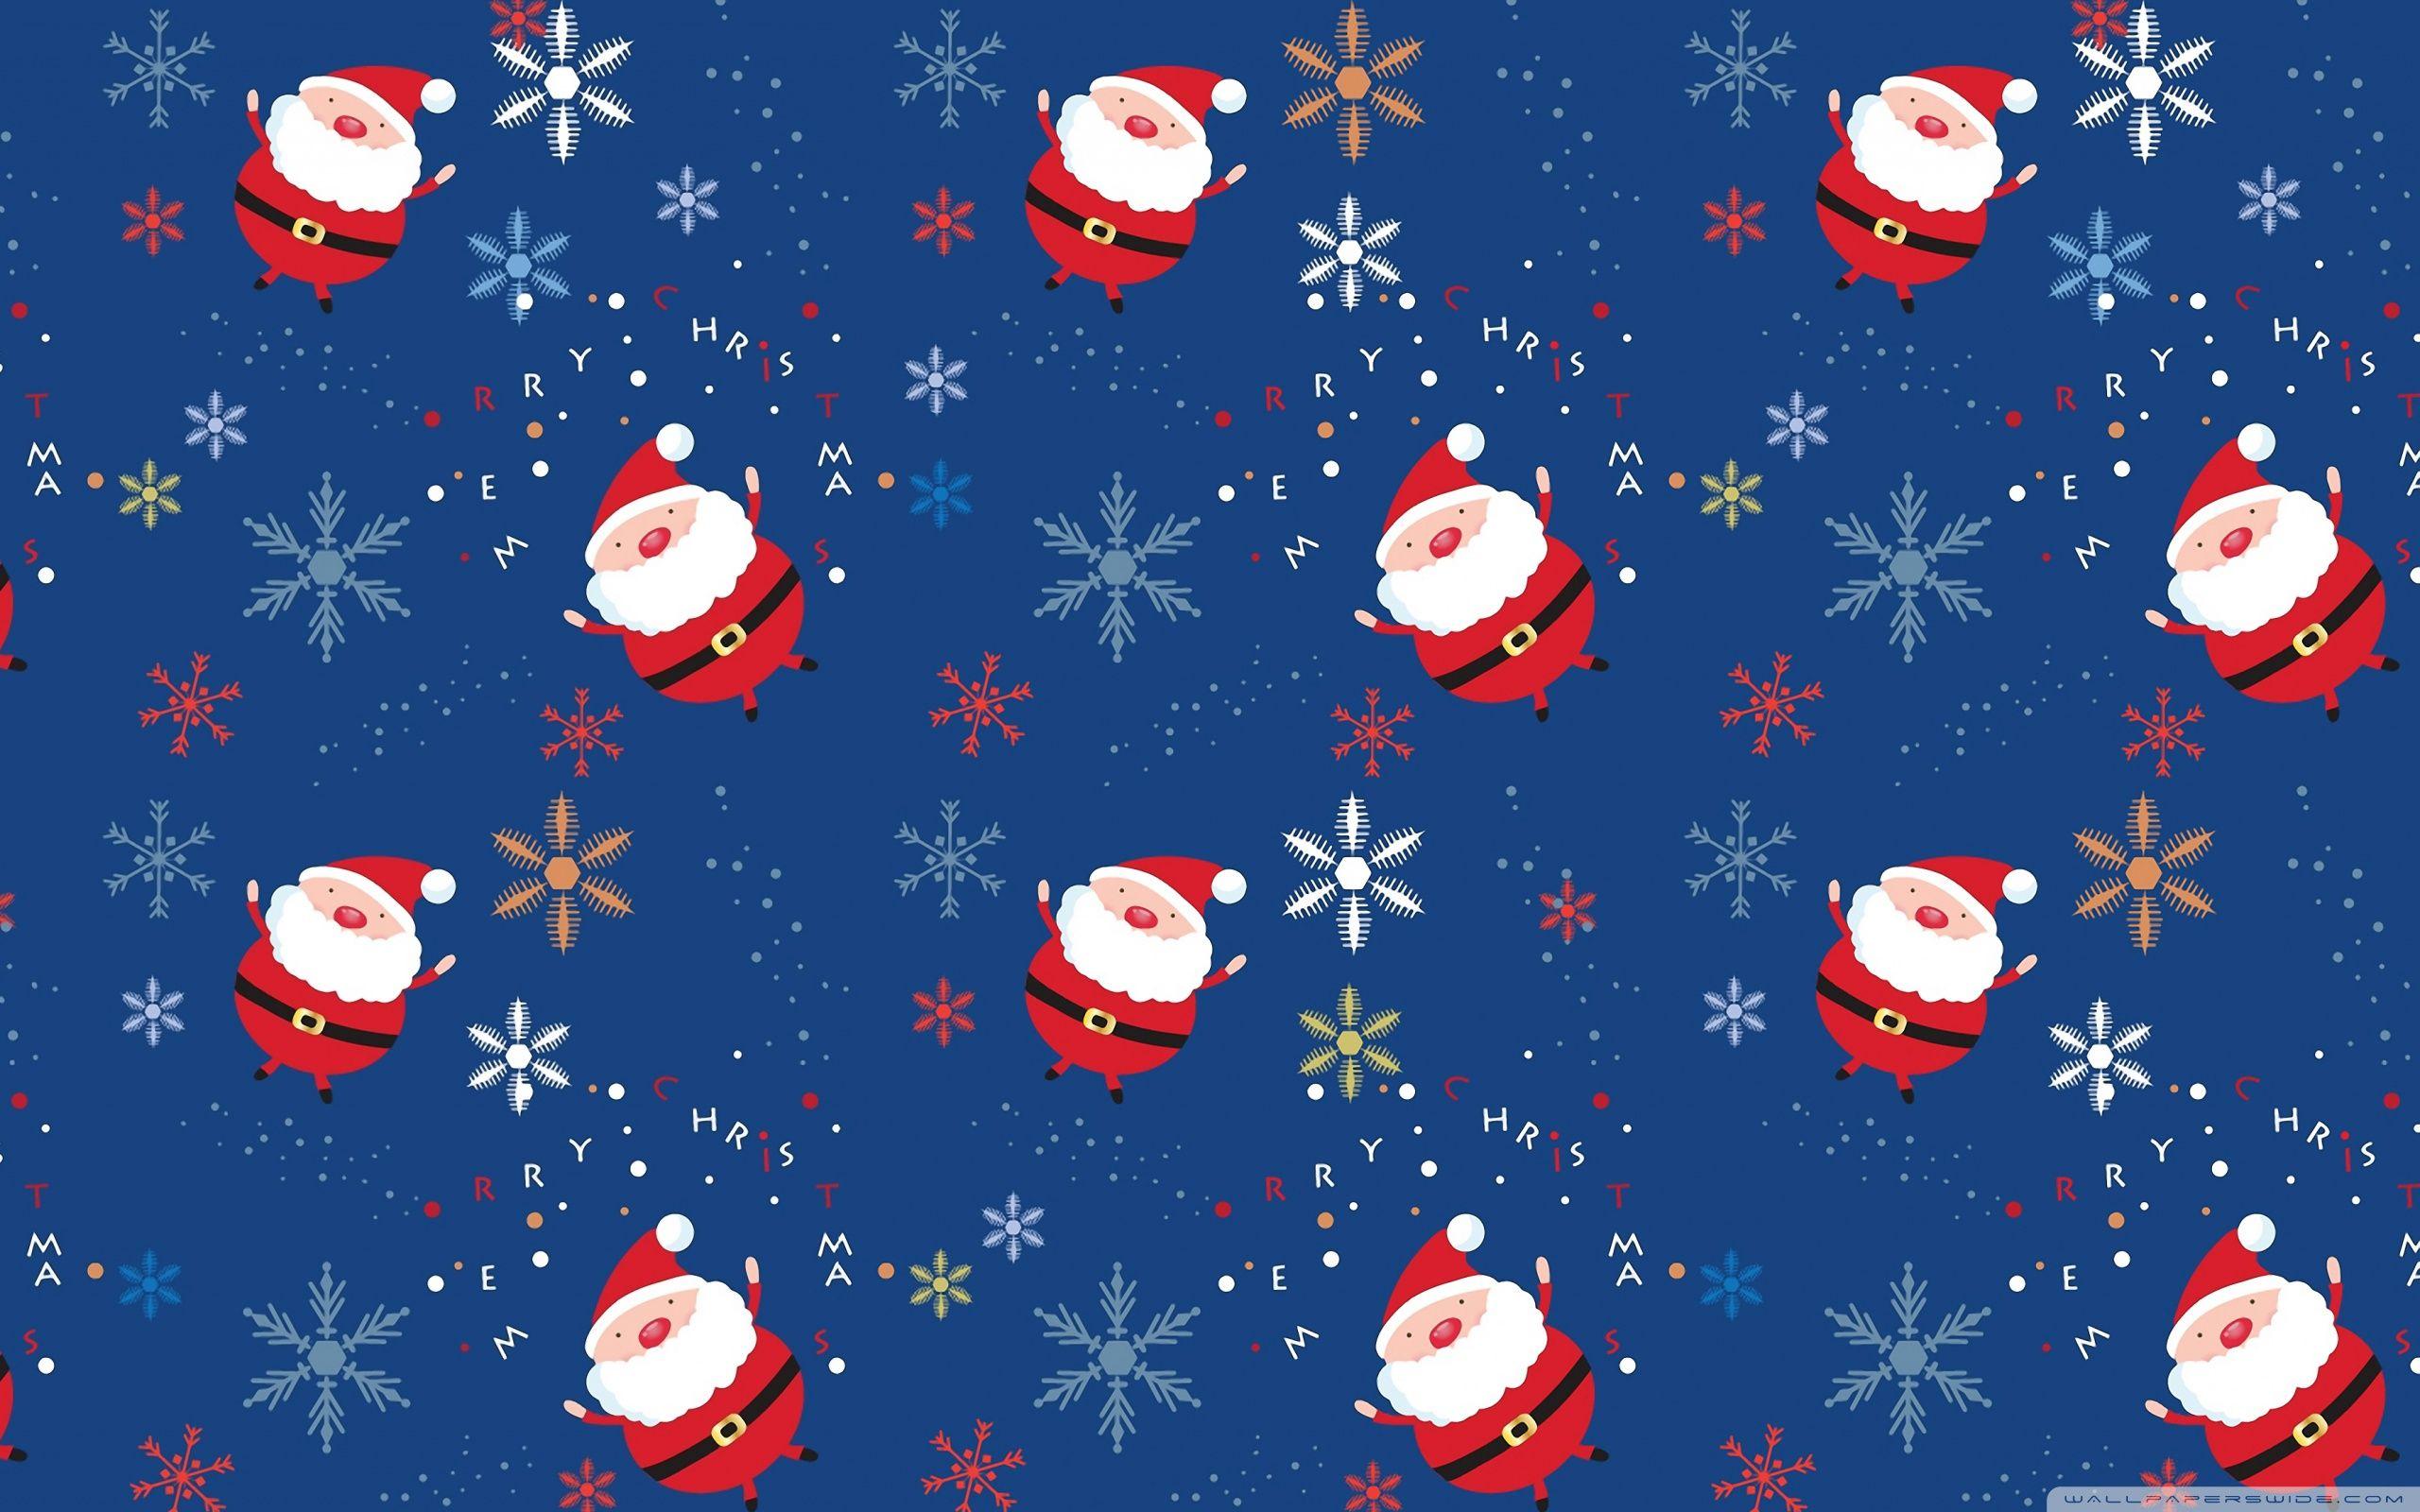 Sfondi Natale Ultra Hd.Cute Christmas Pattern Wallpapers Top Free Cute Christmas Pattern Backgrounds Wallpaperaccess